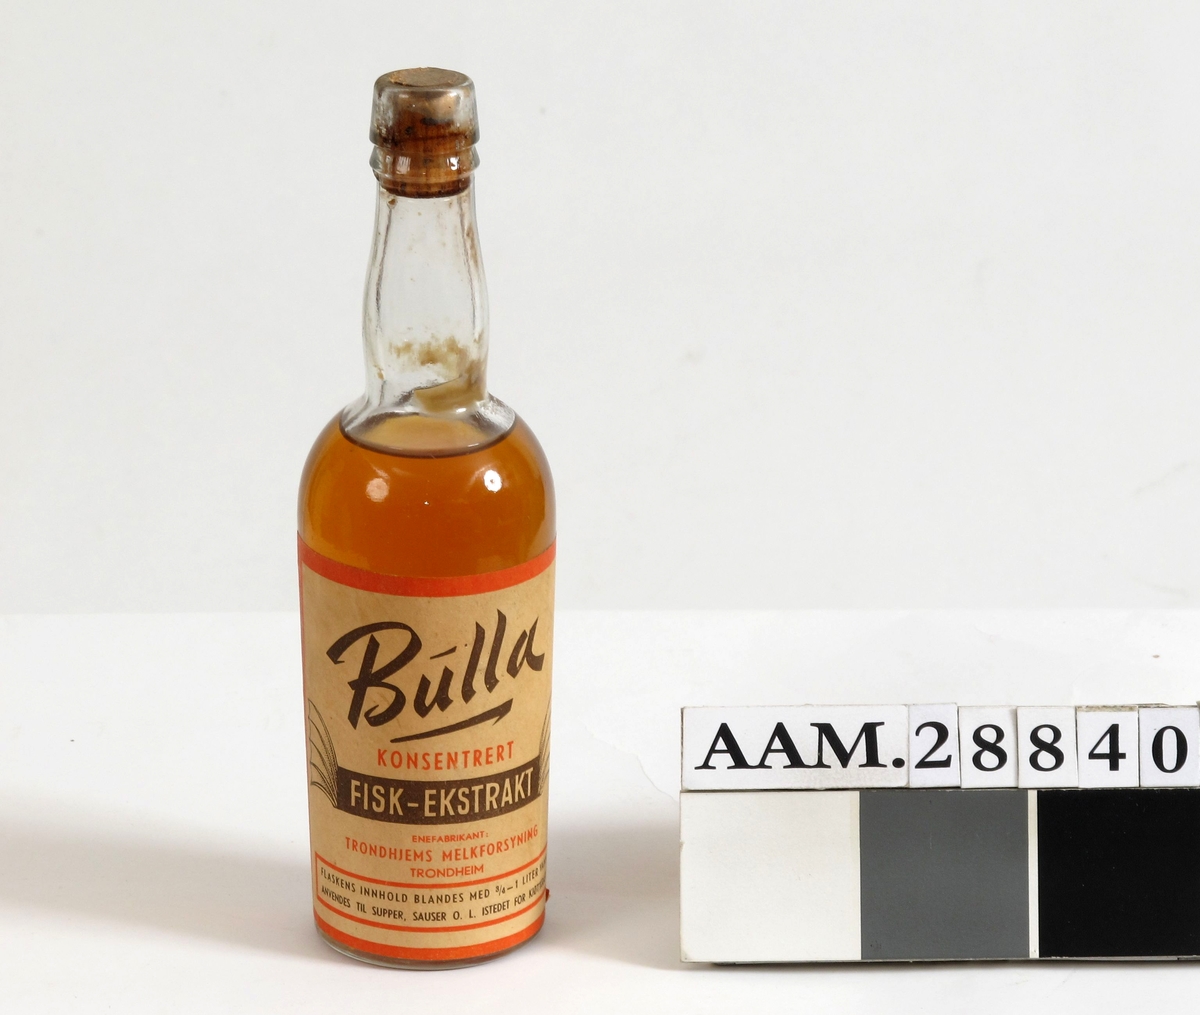 Flaske med kork og originalt innhold. Etikett med tekst, Bulla konsentrert fiskeekstrakt, produsert i Trondheim som krisevare, Brukes istedet for kjøttkraft. 